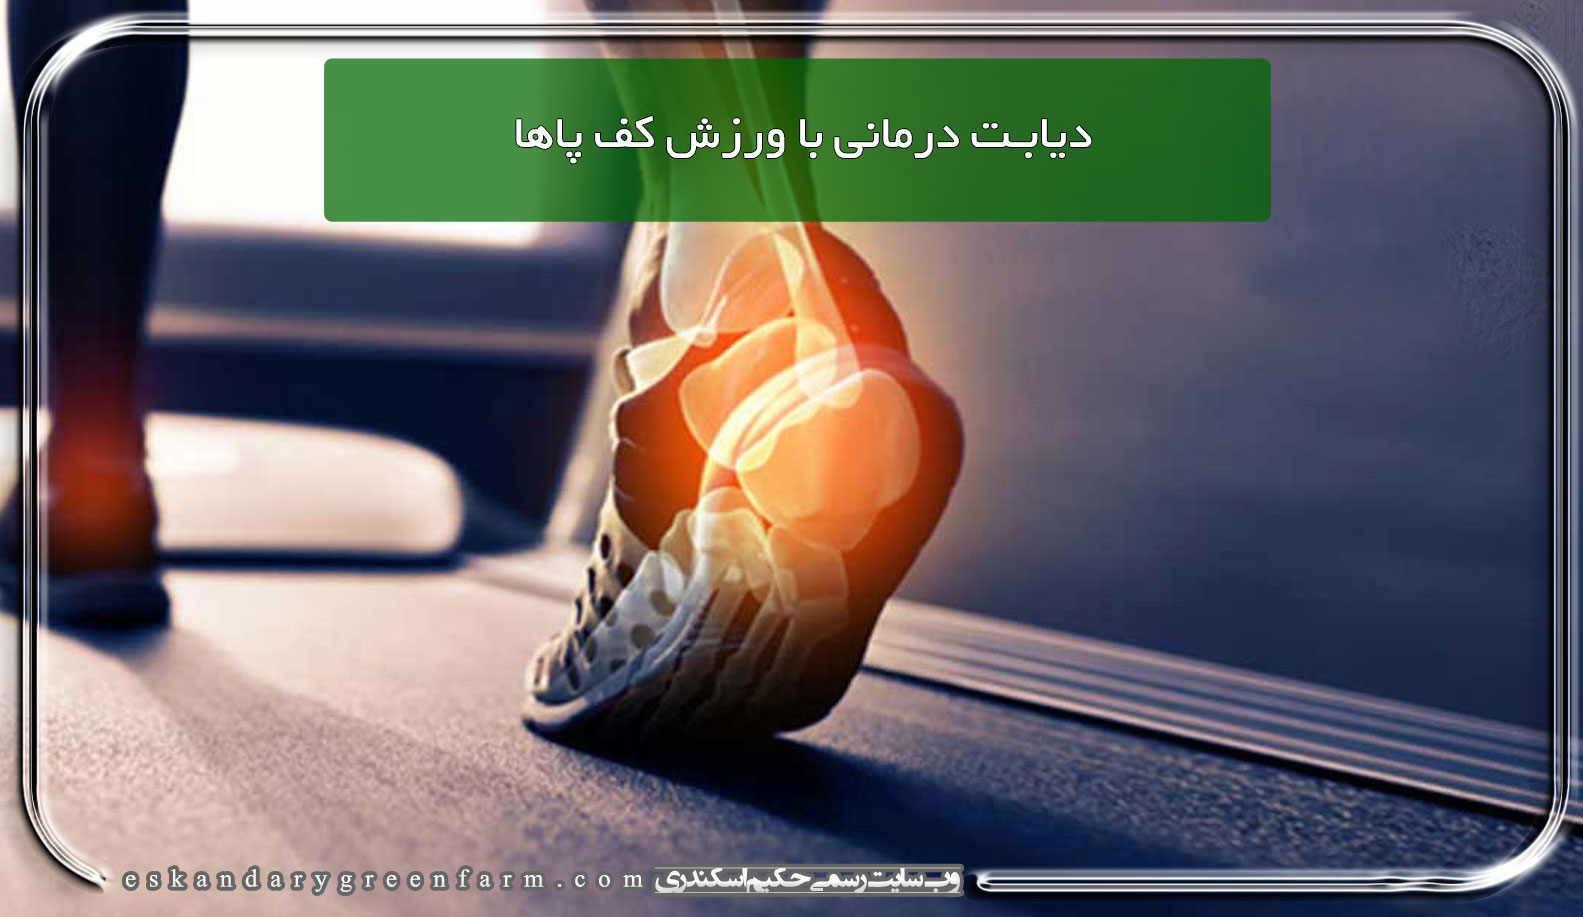 دیابت درمانی با ورزش کف پاها